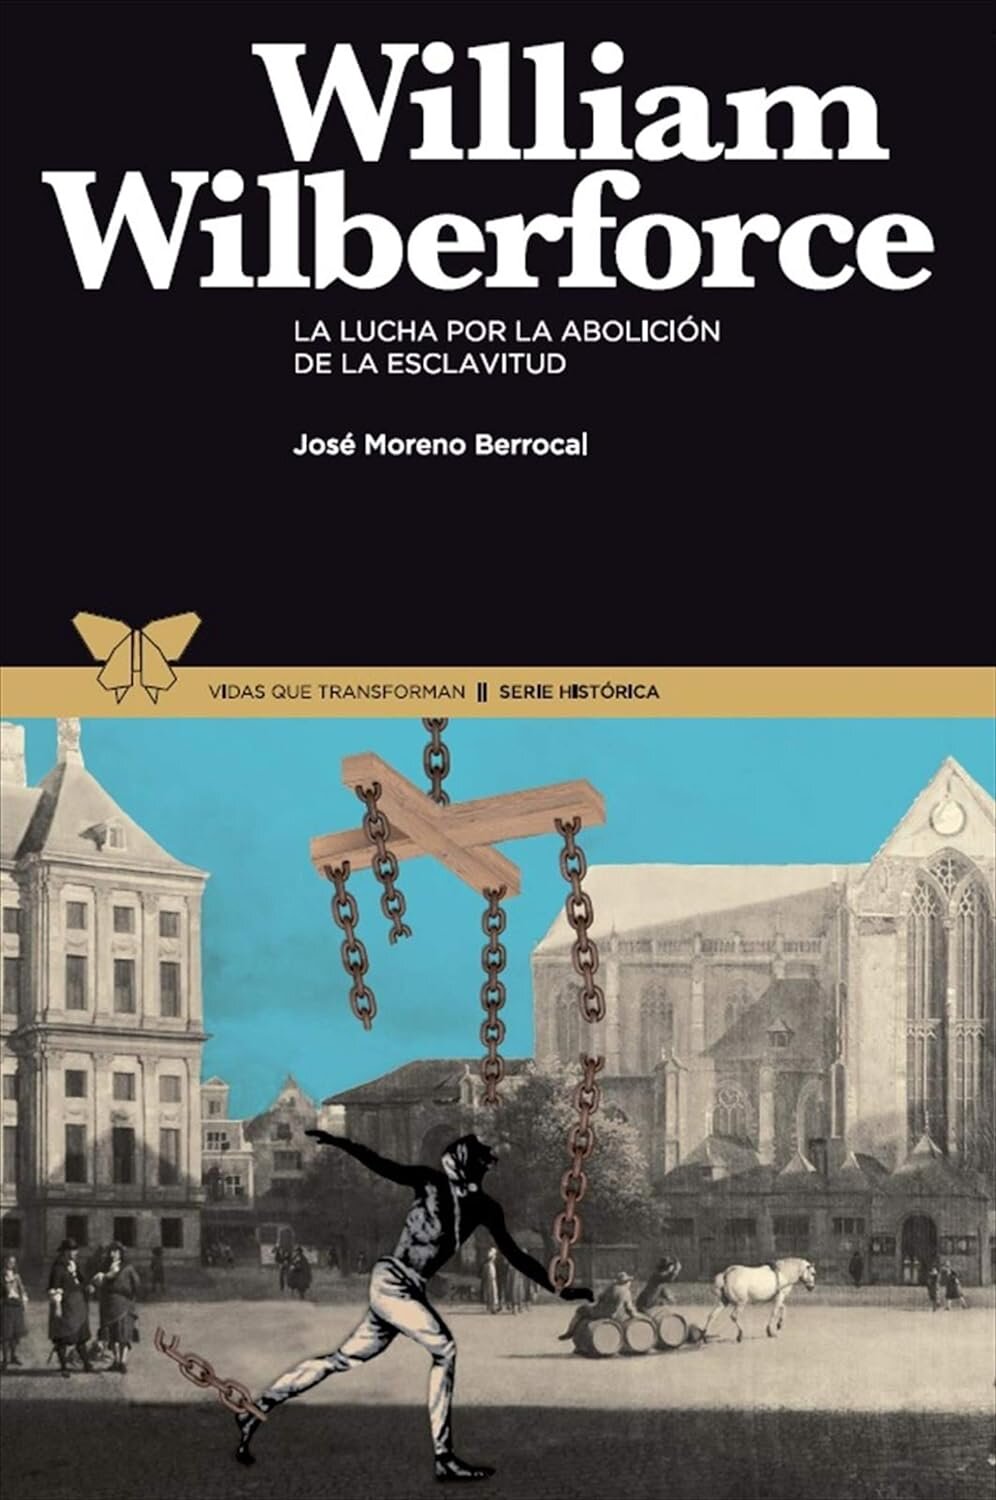 William Wilberforce: La lucha por la abolición de la esclavitud